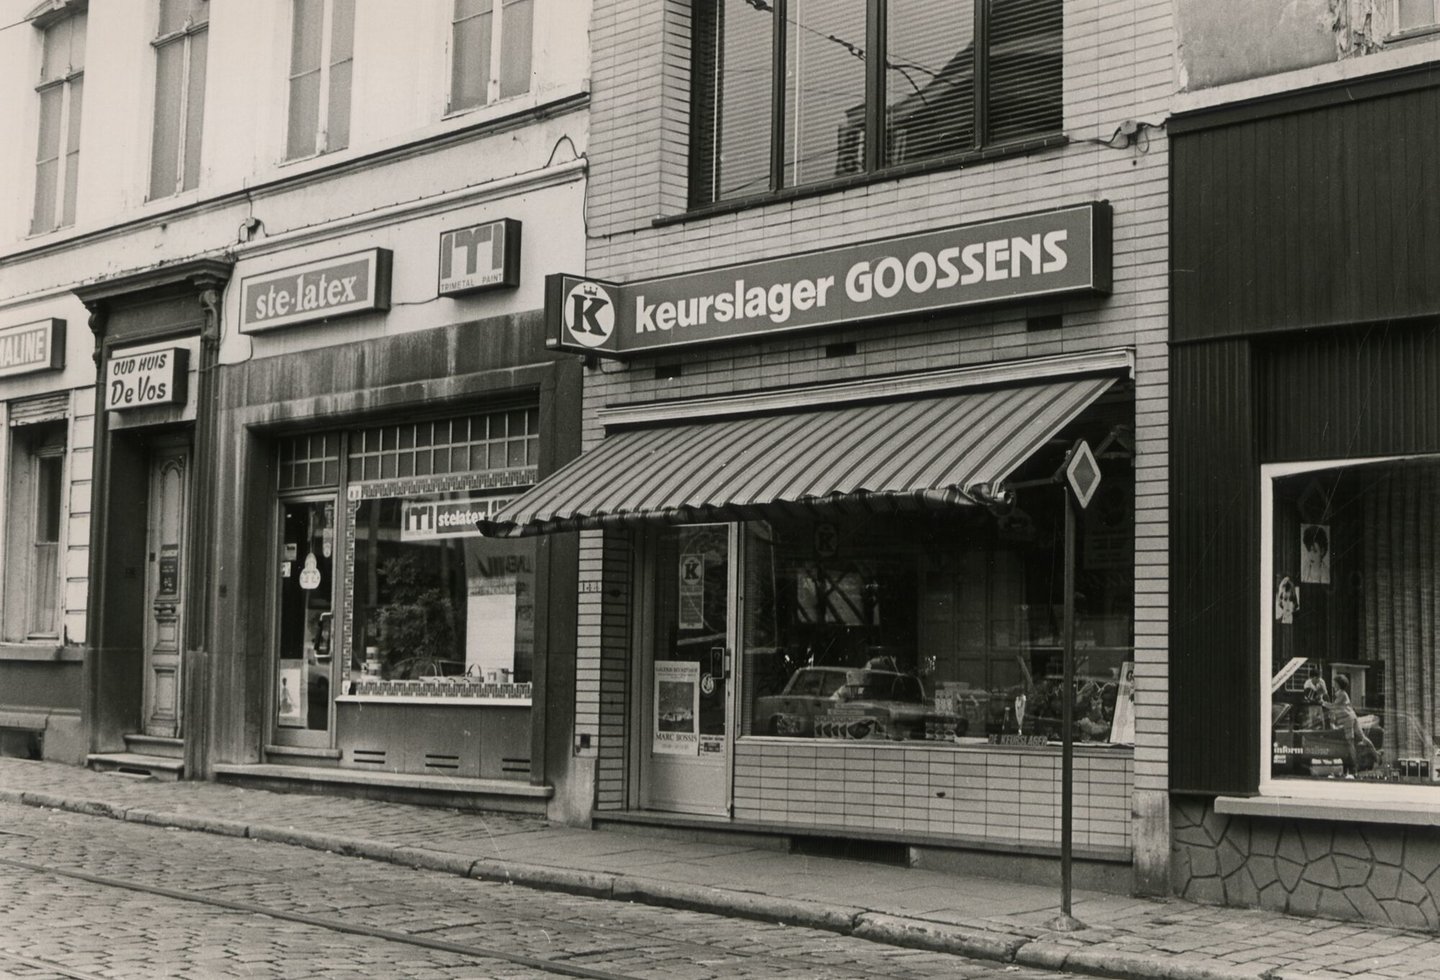 Straatbeeld met etalage van beenhouwerij Goossens en een verfwinkel in Gent